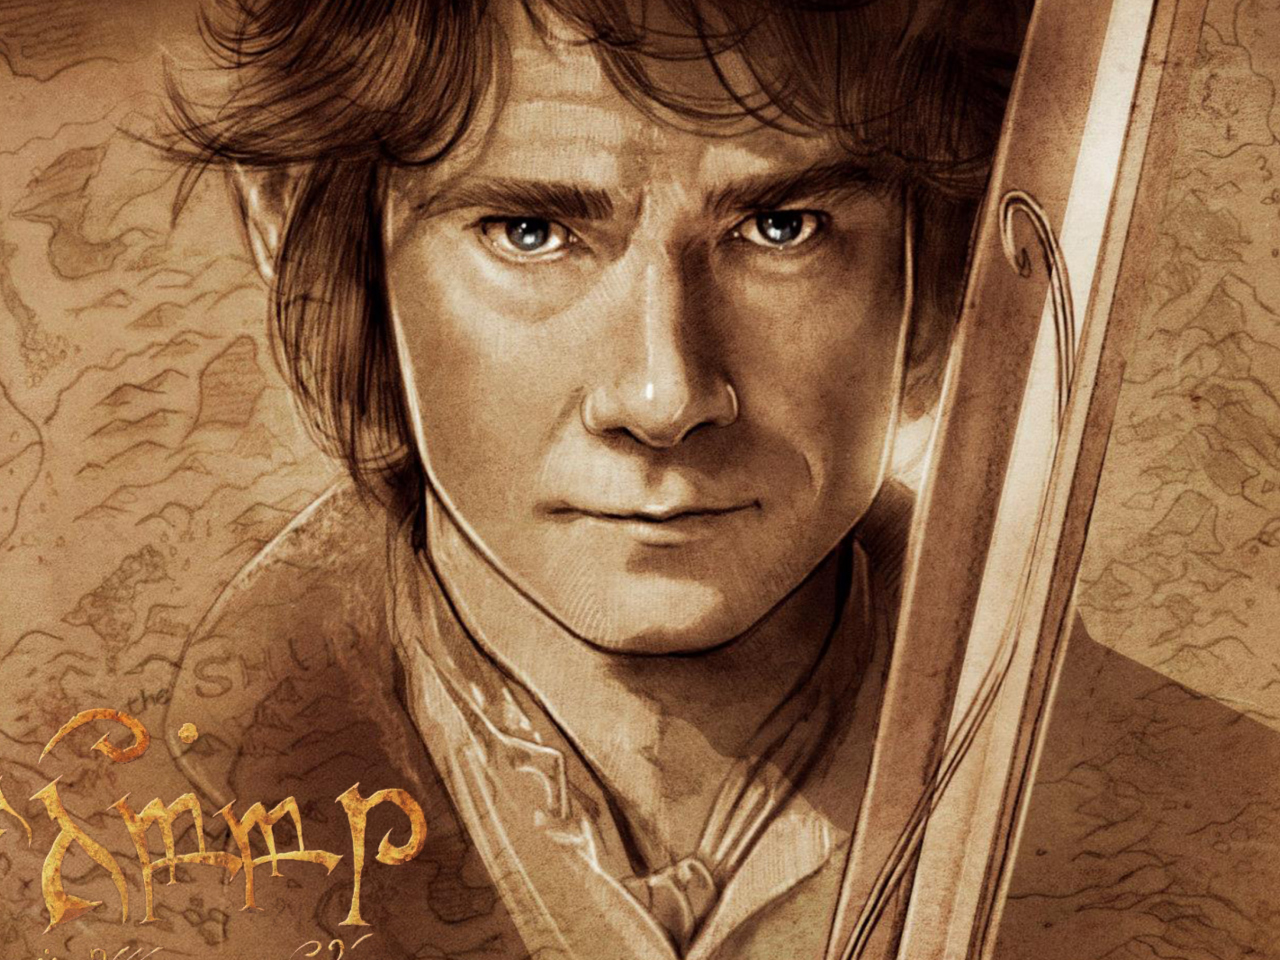 The Hobbit Bilbo Baggins Artwork screenshot #1 1280x960